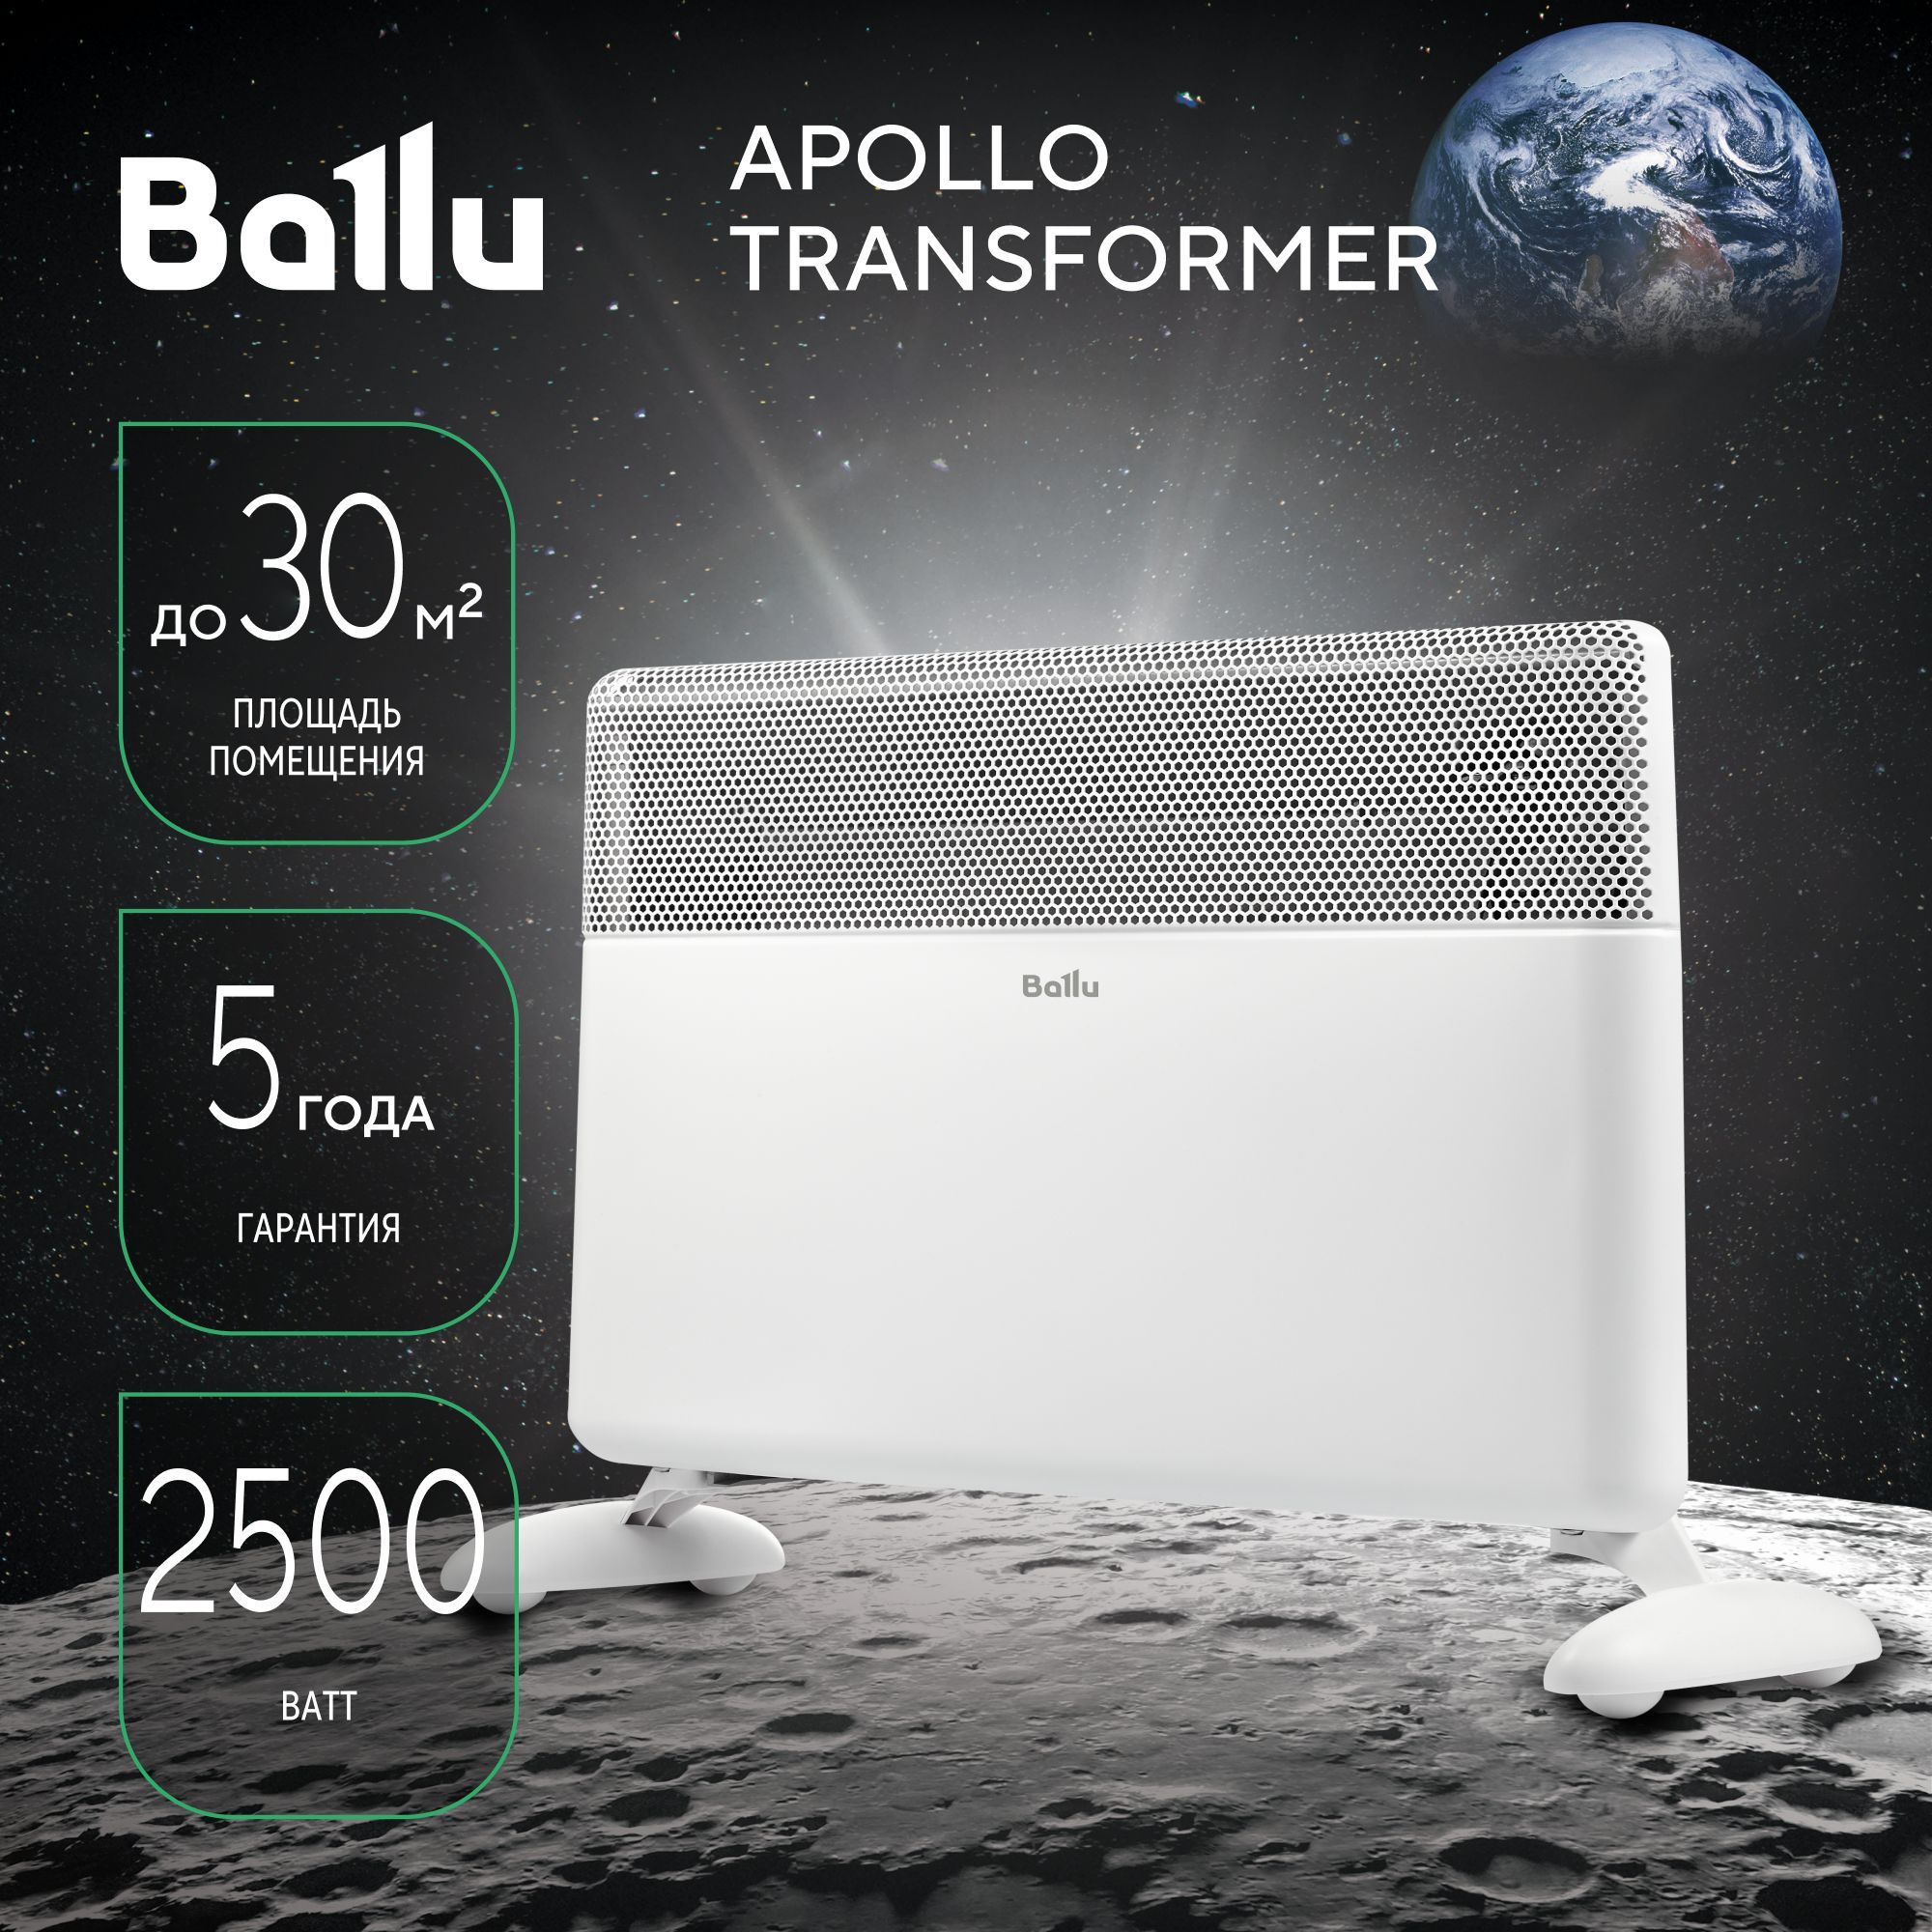 Apollo transformer. Ballu Apollo Transformer. Ballu Apollo. Модуль отопительный электрического конвектора Balu Apollo Transformer BEC/at-1500. Ballu BEC-at-1500 задипает сенсор.